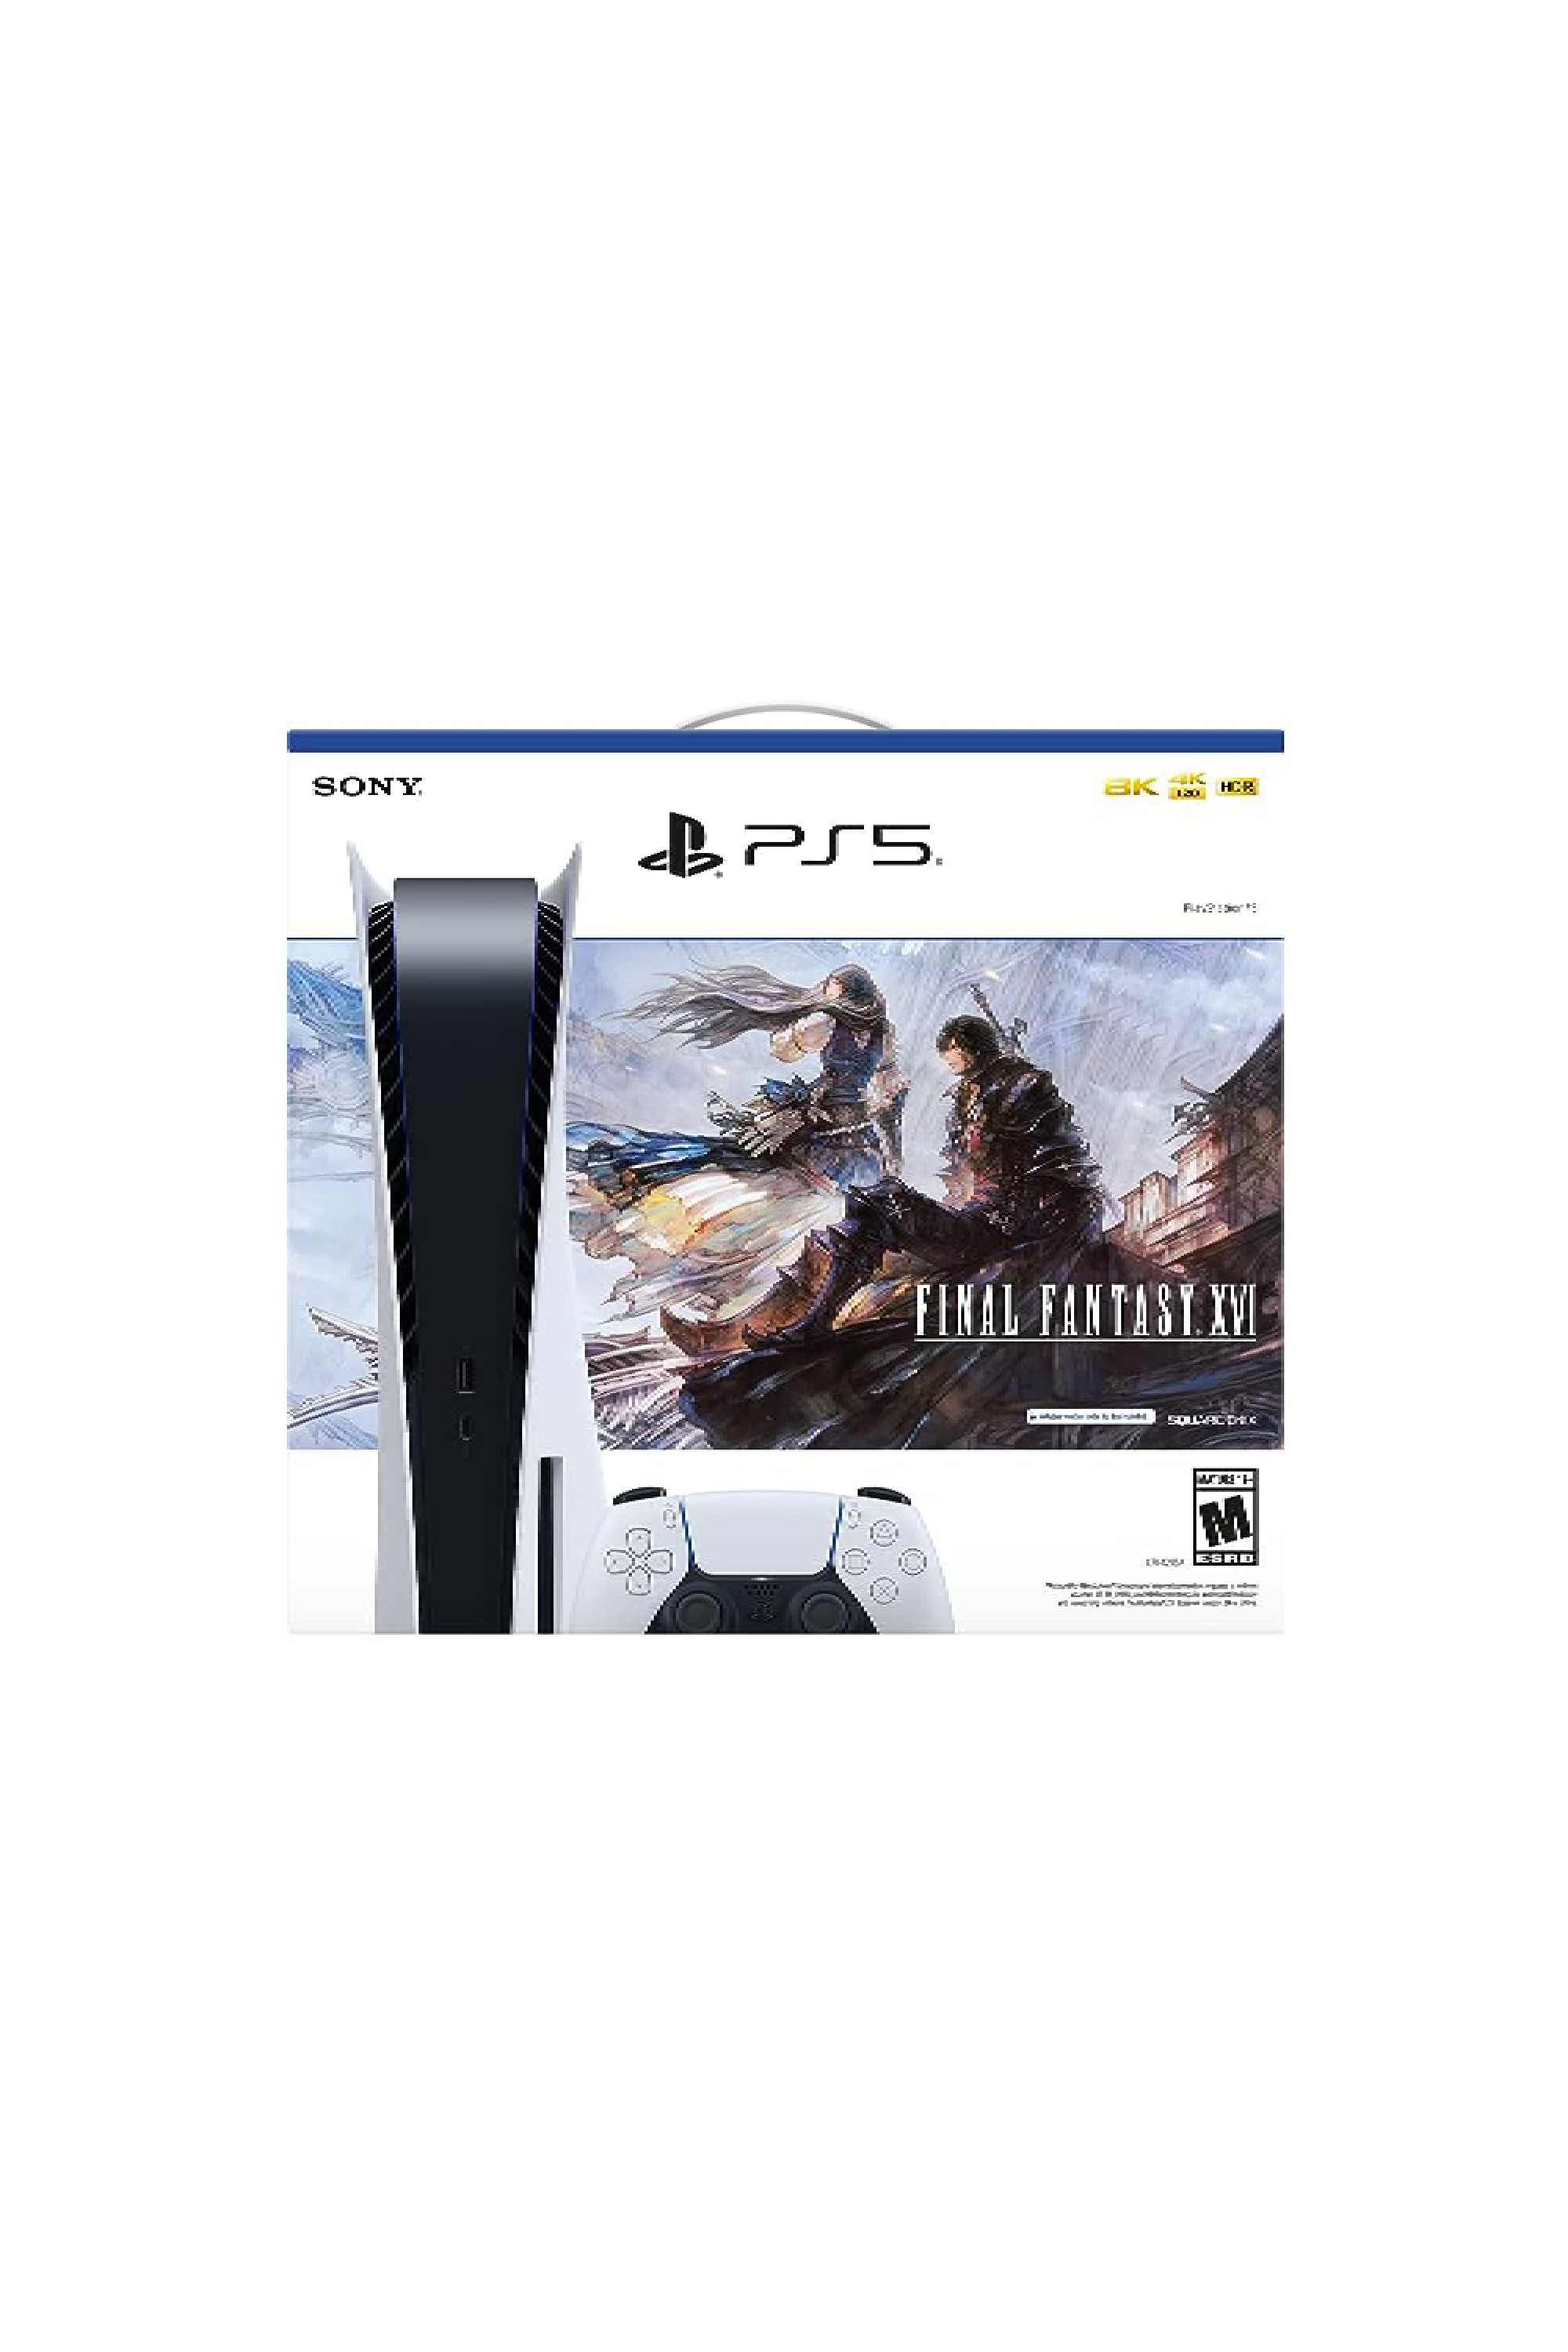 PS5 Final Fantasy XVI – GameStation